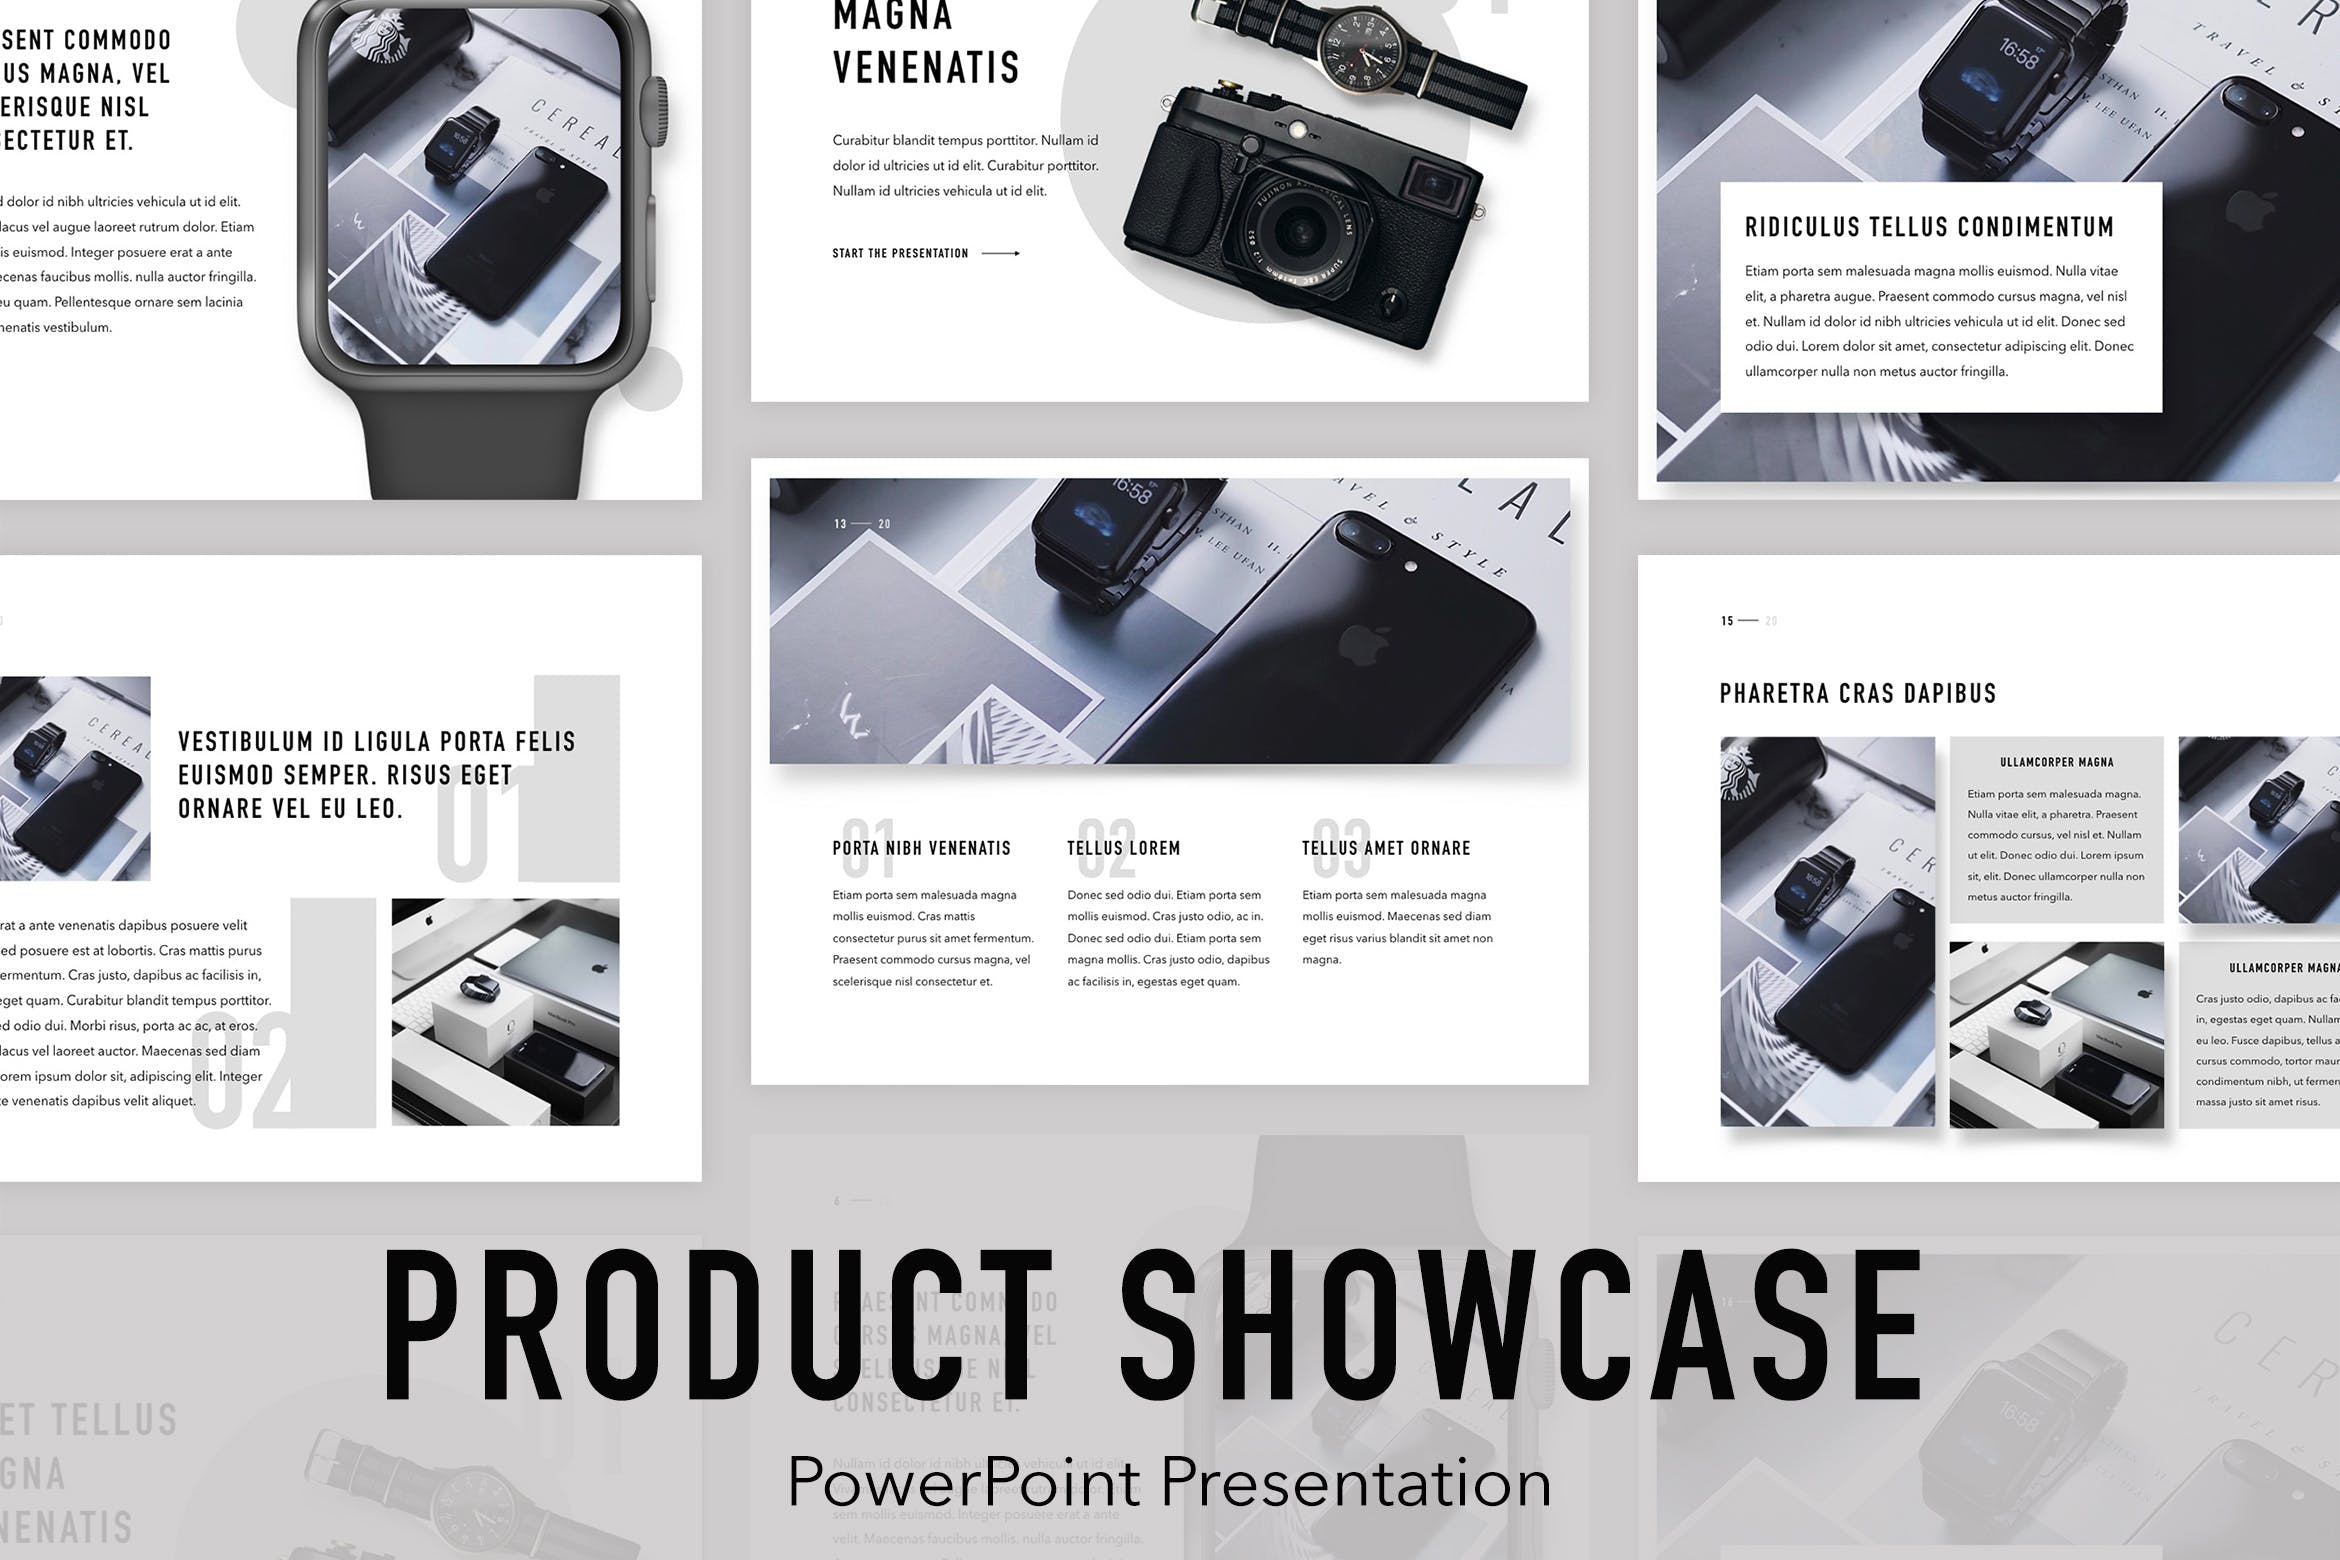 产品设计展示/产品推广适用的PPT幻灯片模板 Product Showcase PowerPoint Template插图